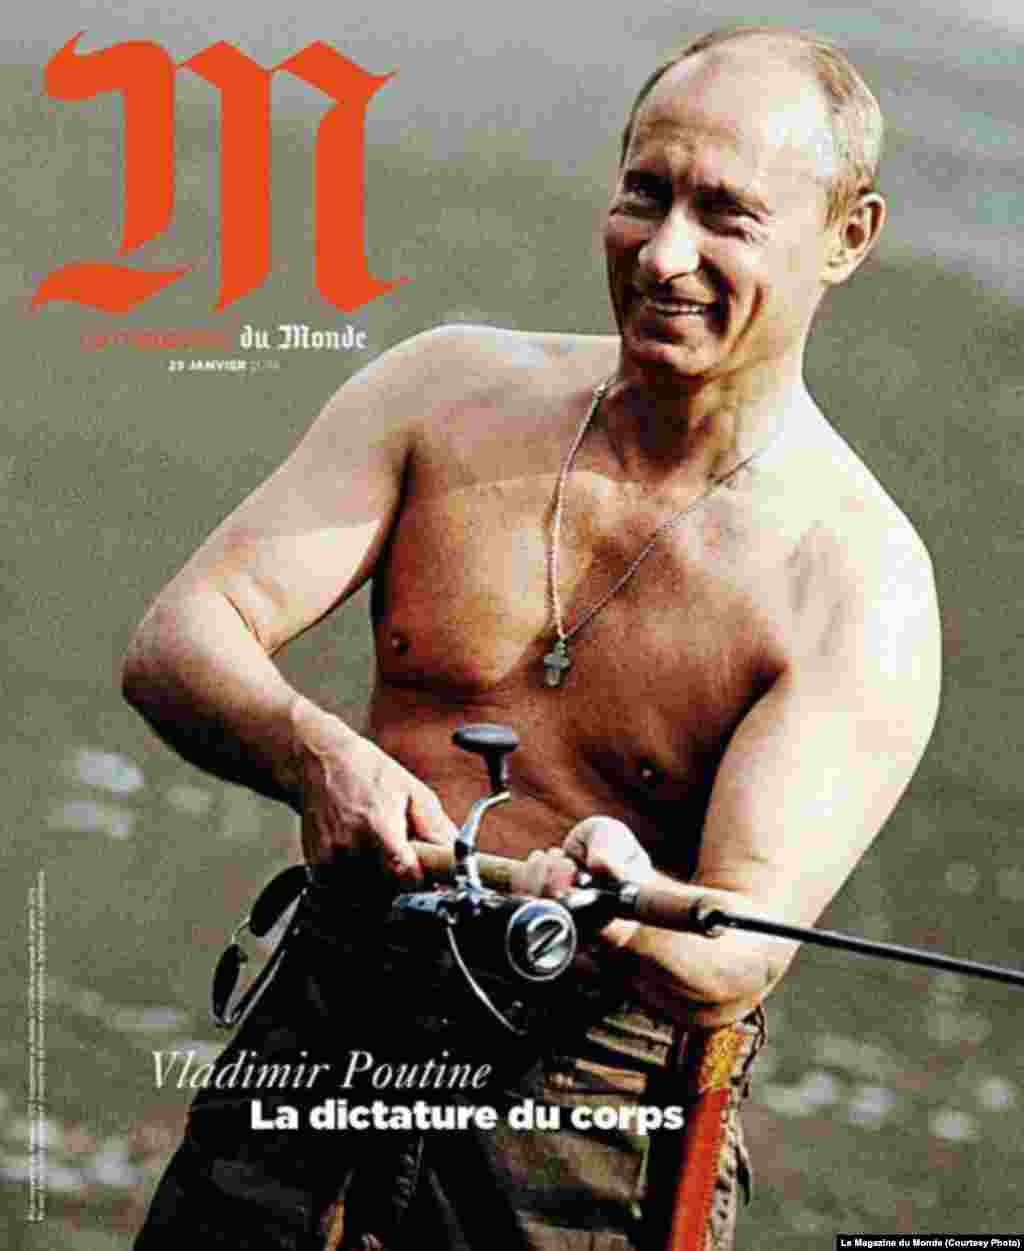 На обкладинці написано &laquo;Диктатура тіла&raquo;. Путіна регулярно фотографують голим до пояса, витворюючи йому образ &laquo;ультрамачо&raquo;